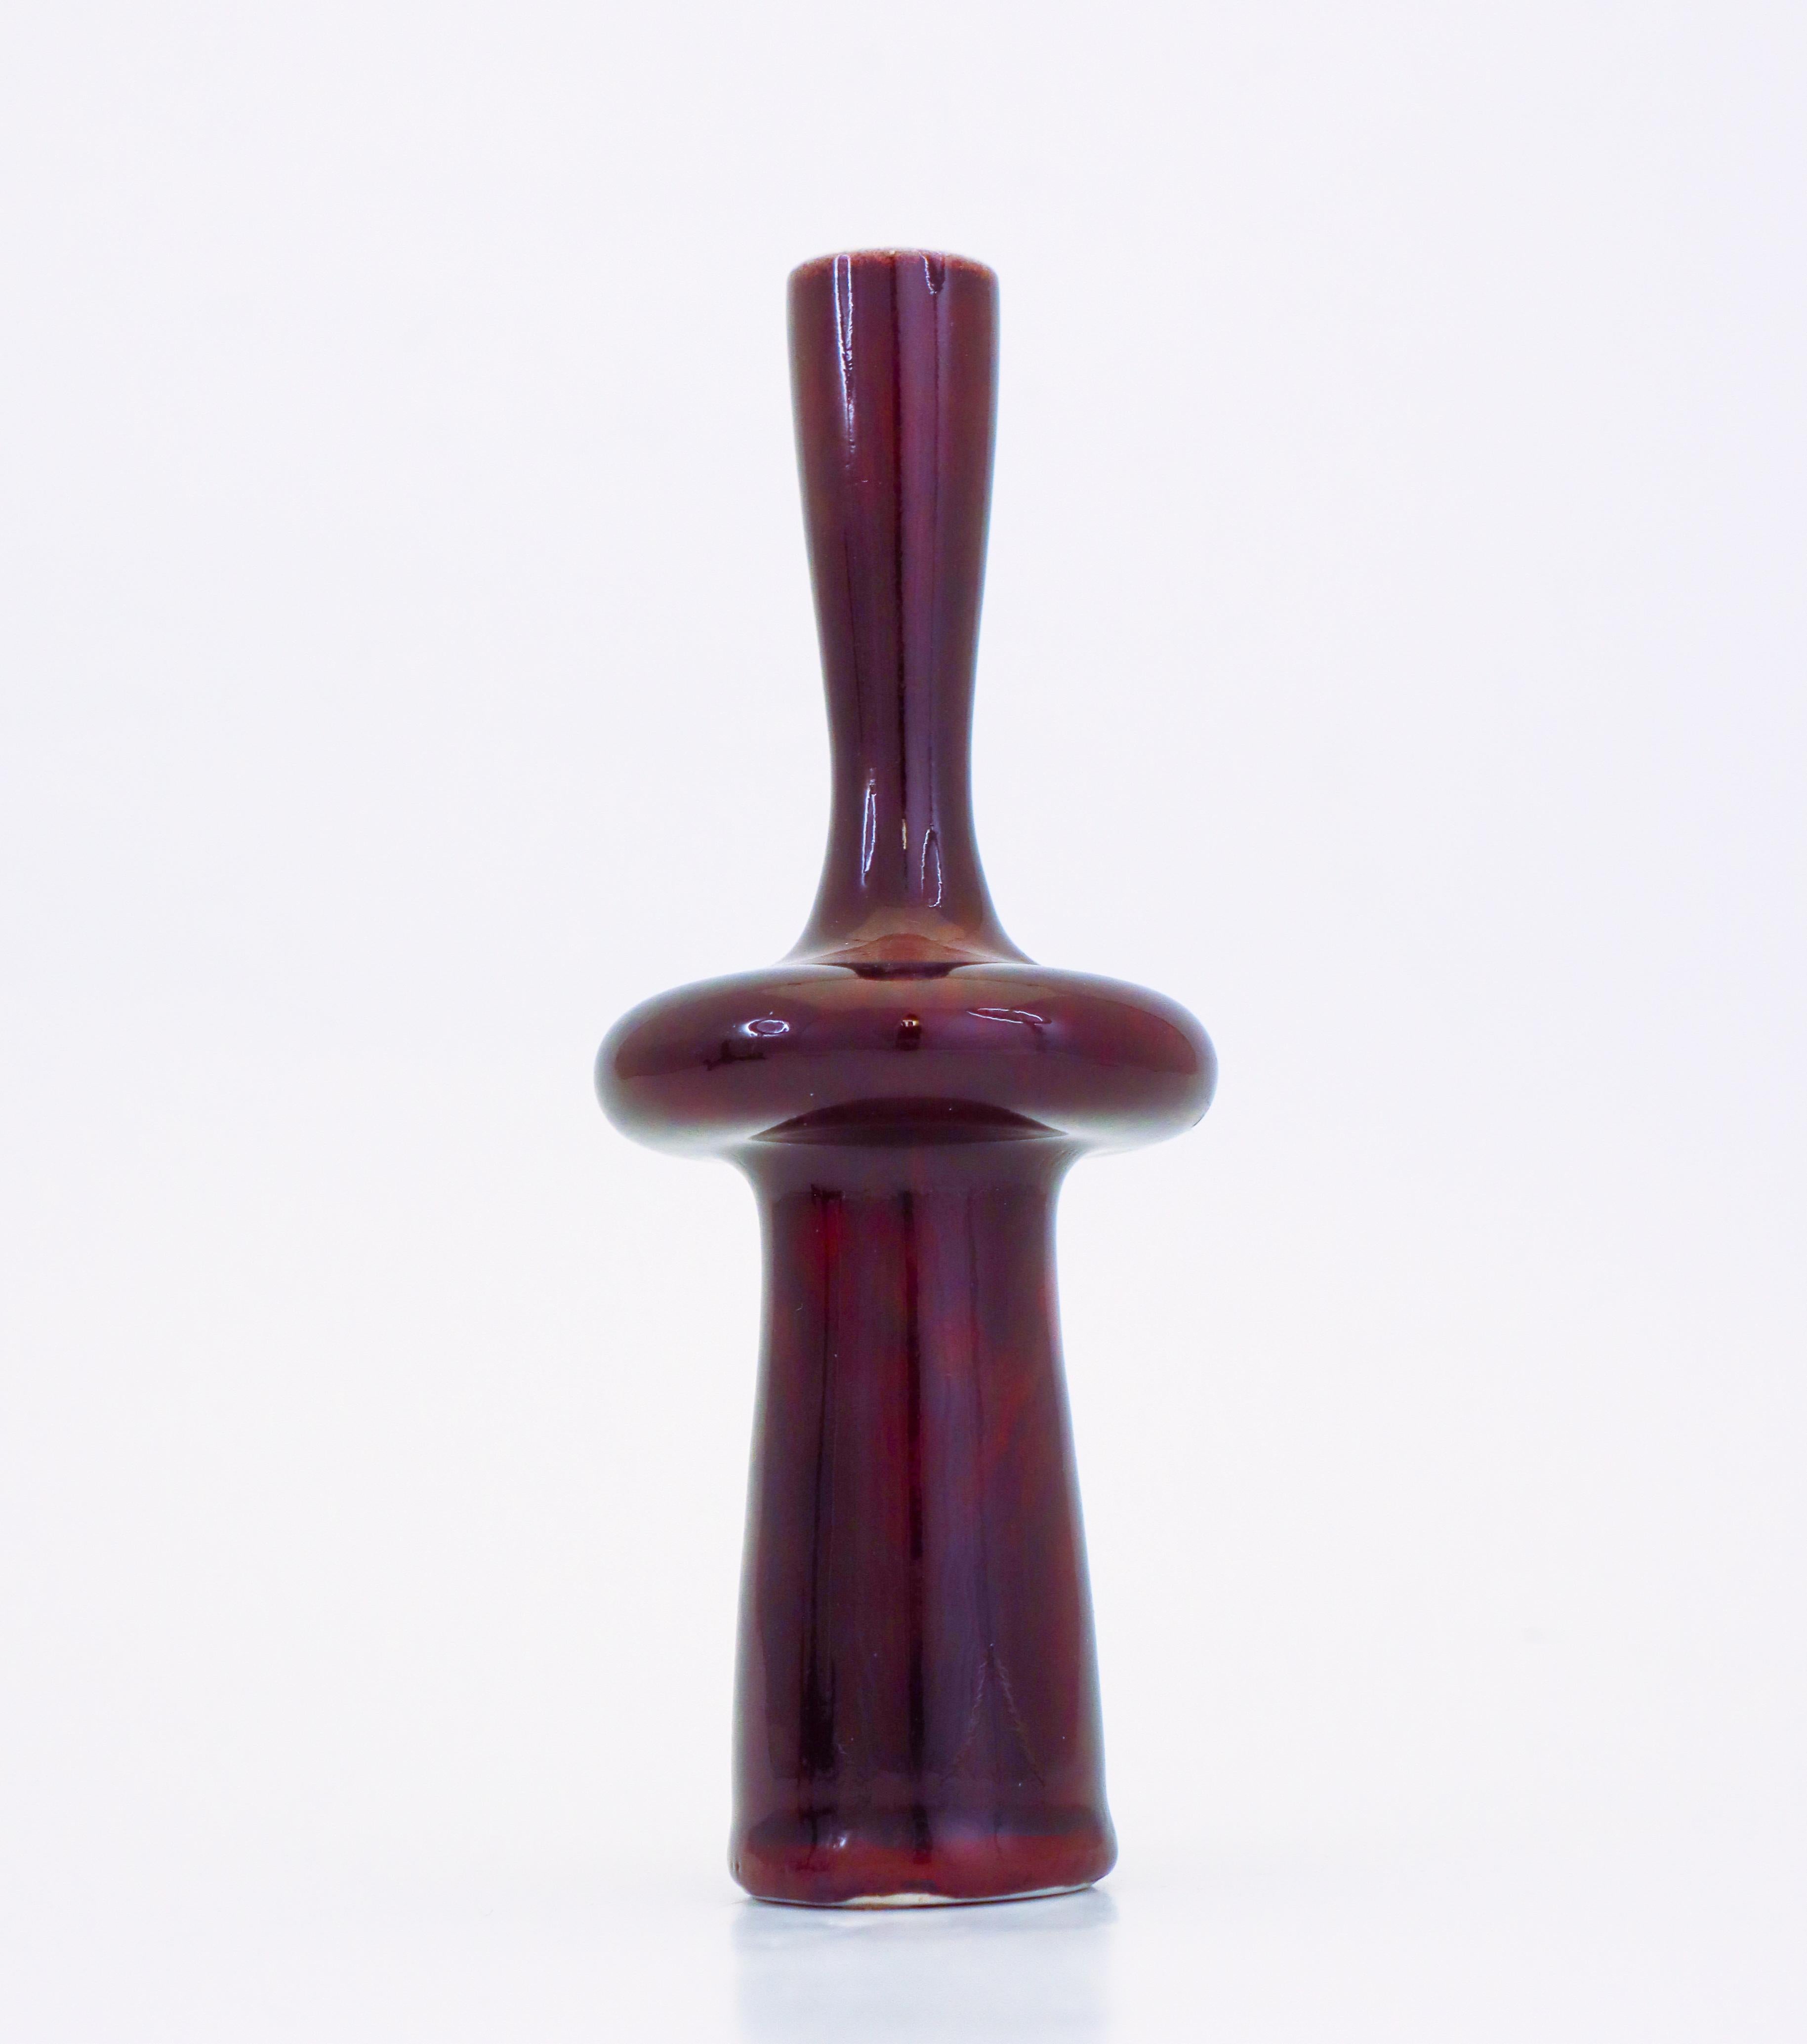 Vase en porcelaine de couleur sang-de-bœuf avec une belle glaçure brillante, conçu par Stig Lindberg à Gustavsberg. Le vase mesure 18,5 cm de haut et 7,5 cm de diamètre. Il est en excellent état, à l'exception de quelques marques mineures dues à la